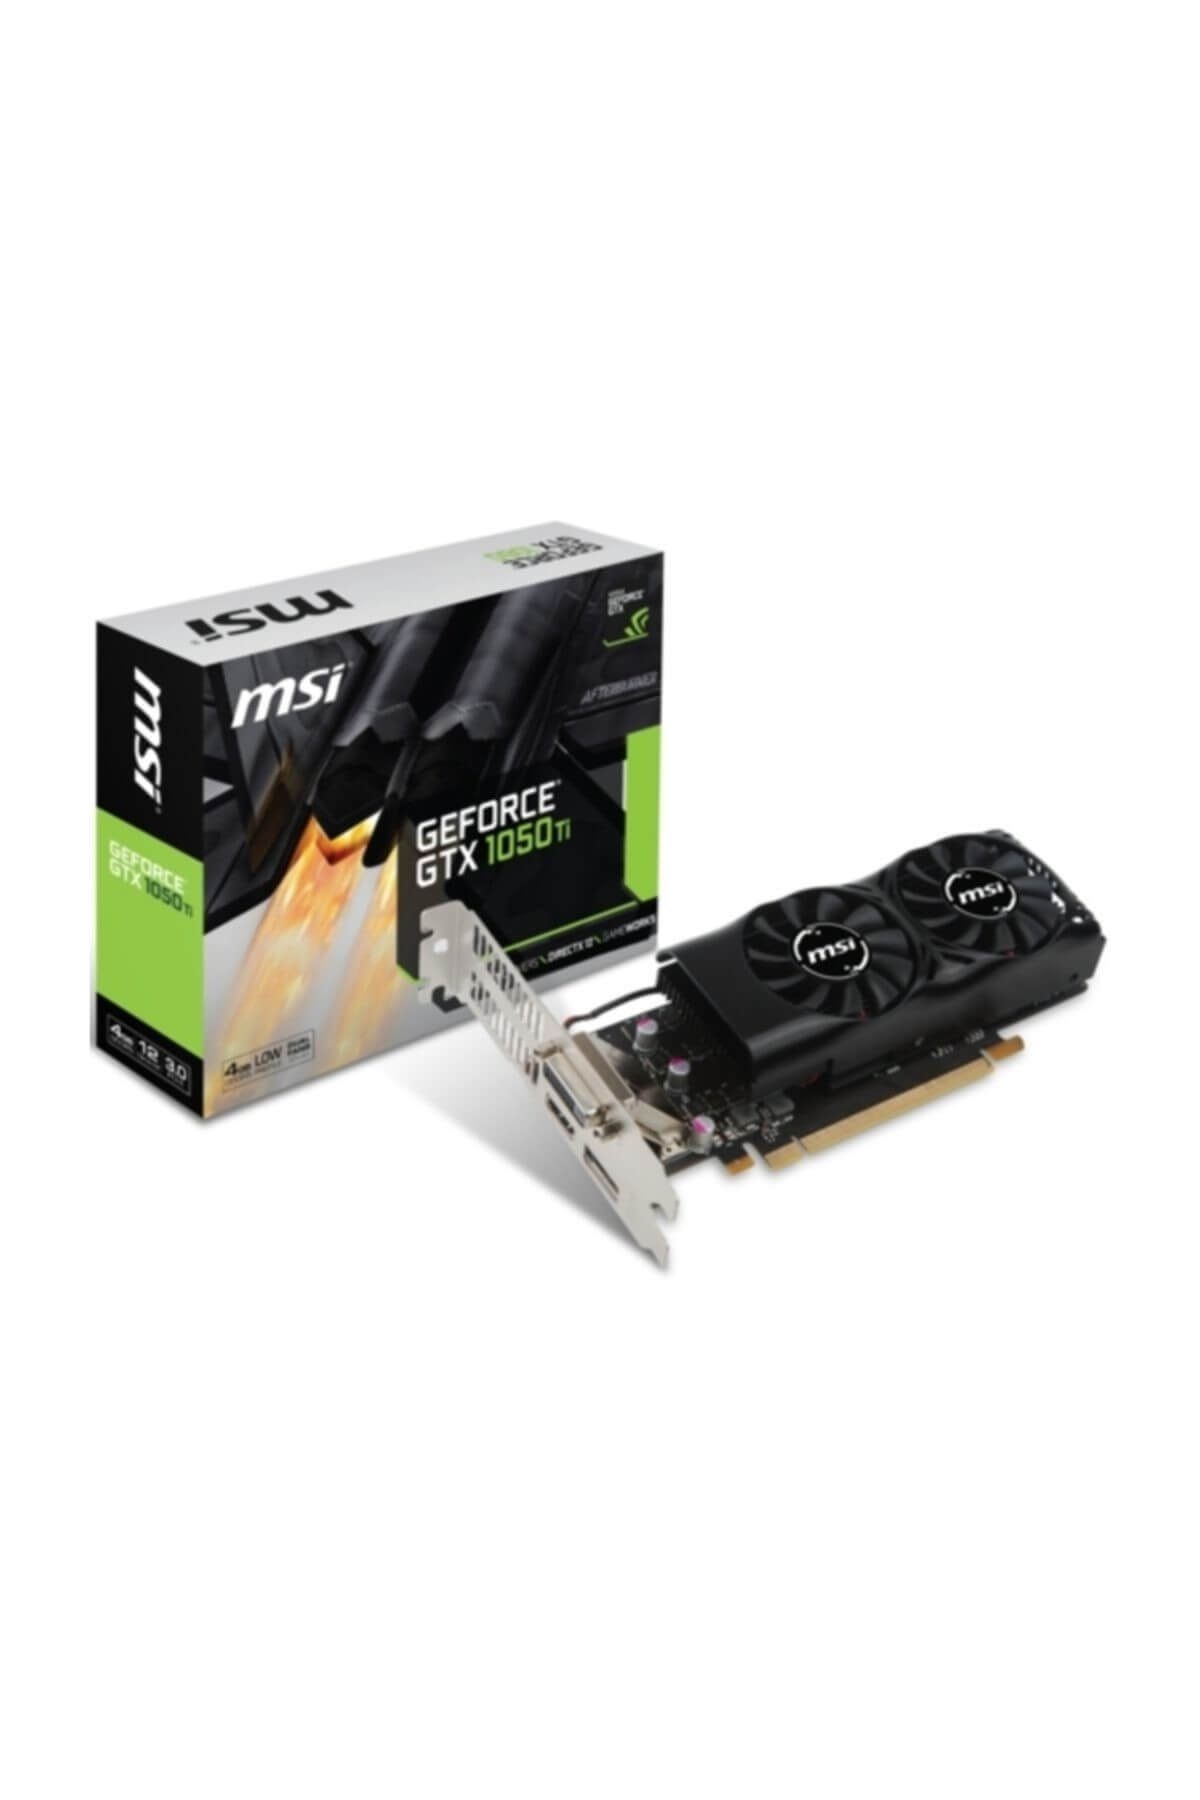 MSI GeForce GTX 1050 Ti 4GT LP GTX1050TI 4GB GDDR5 128B (1XDVI 1XHDMI 1XDP) Ekran Kartı